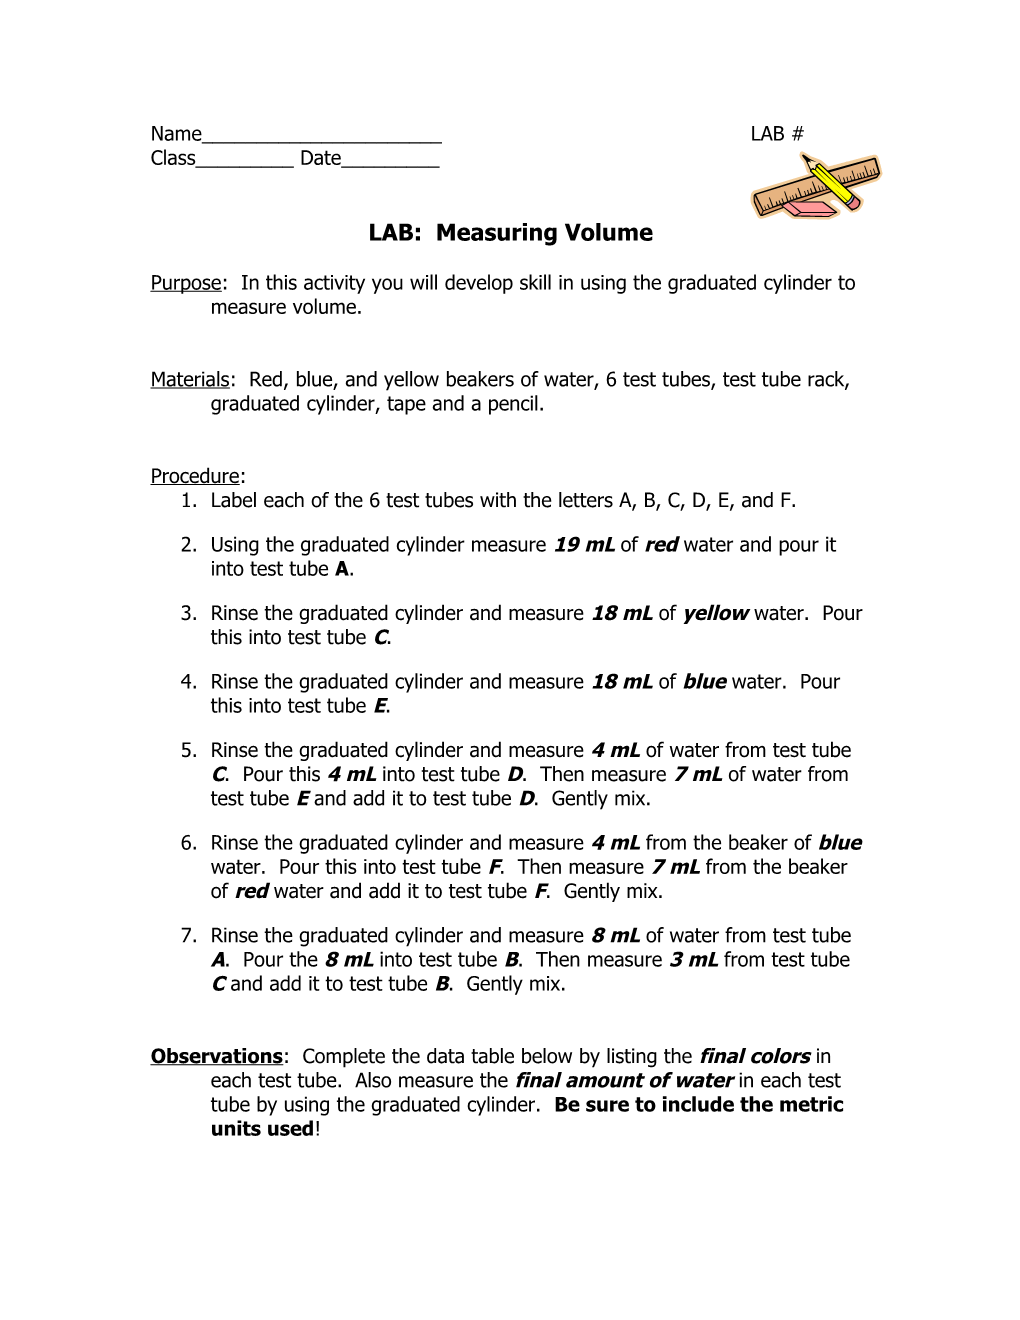 LAB: Measuring Volume